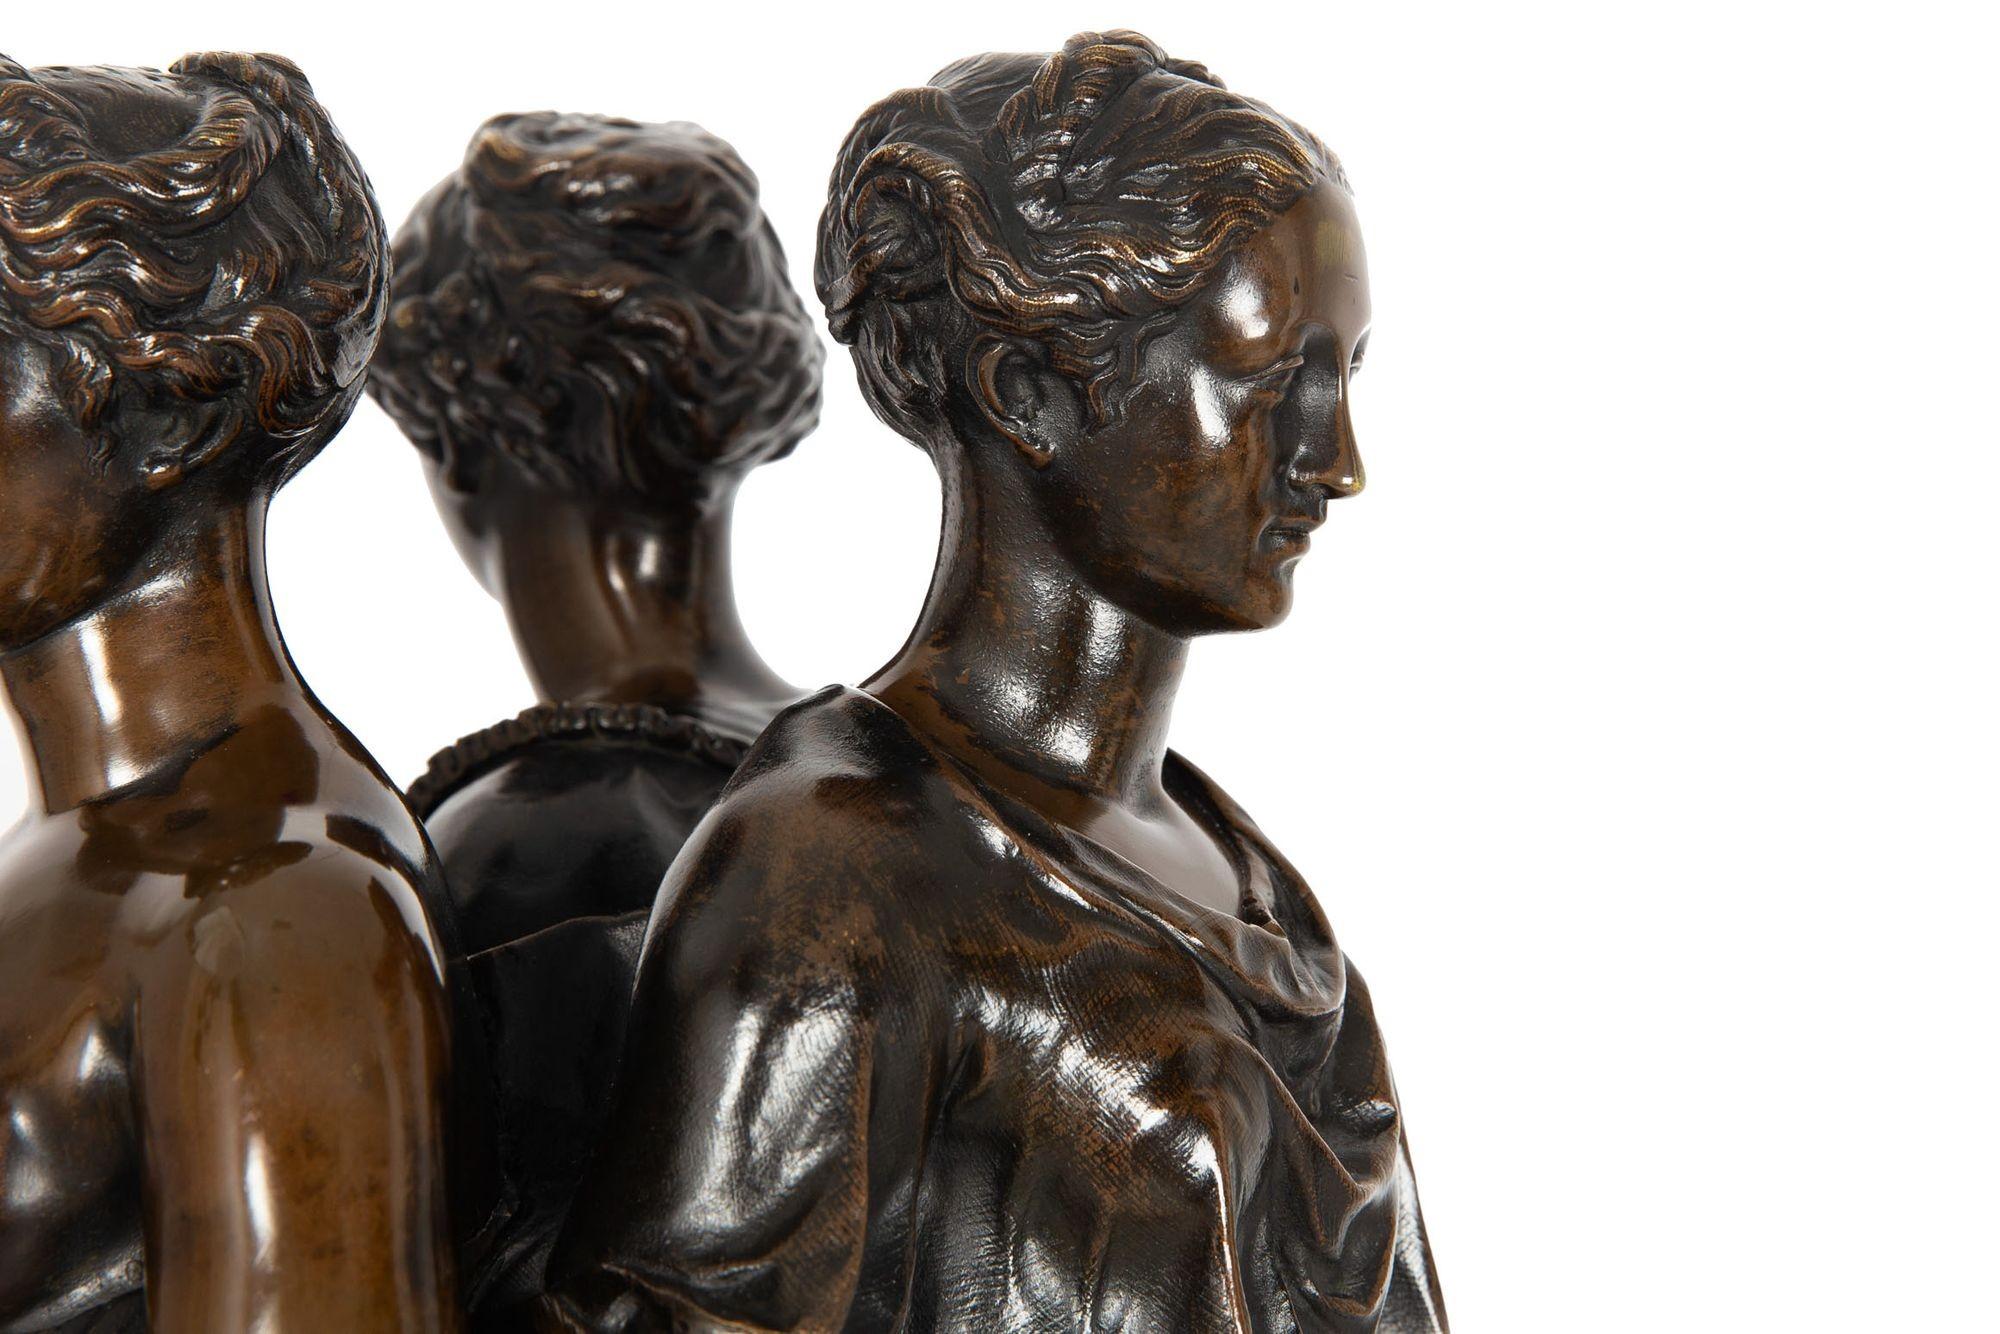 French Antique Bronze Sculpture “Three Graces” after Germain Pilon For Sale 12